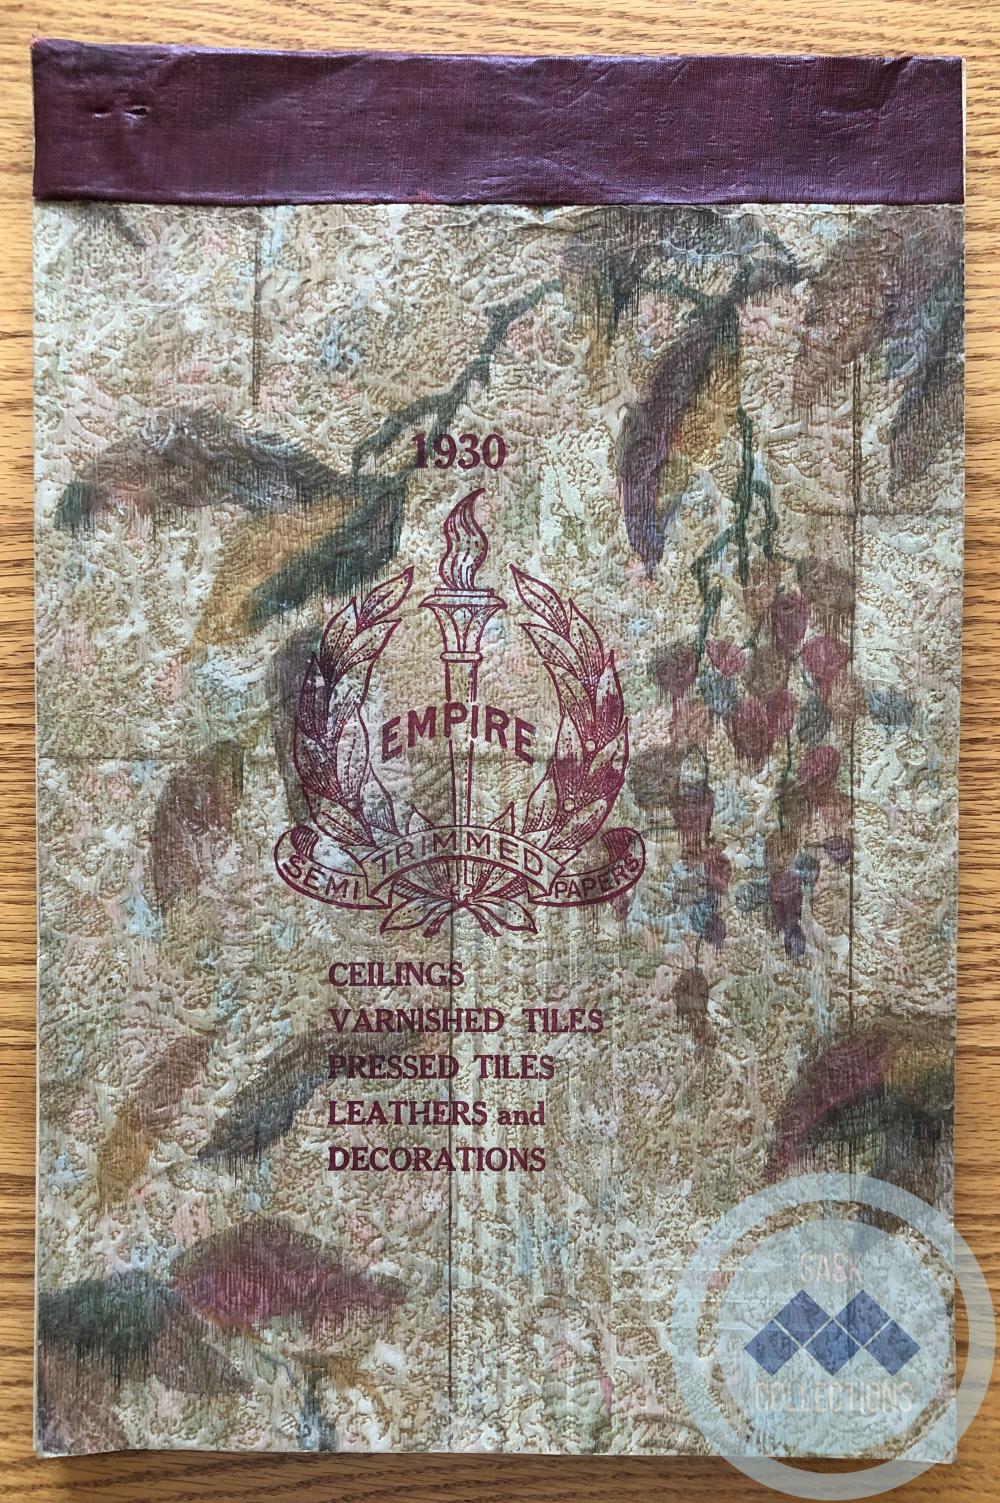 Wallpaper - sample book